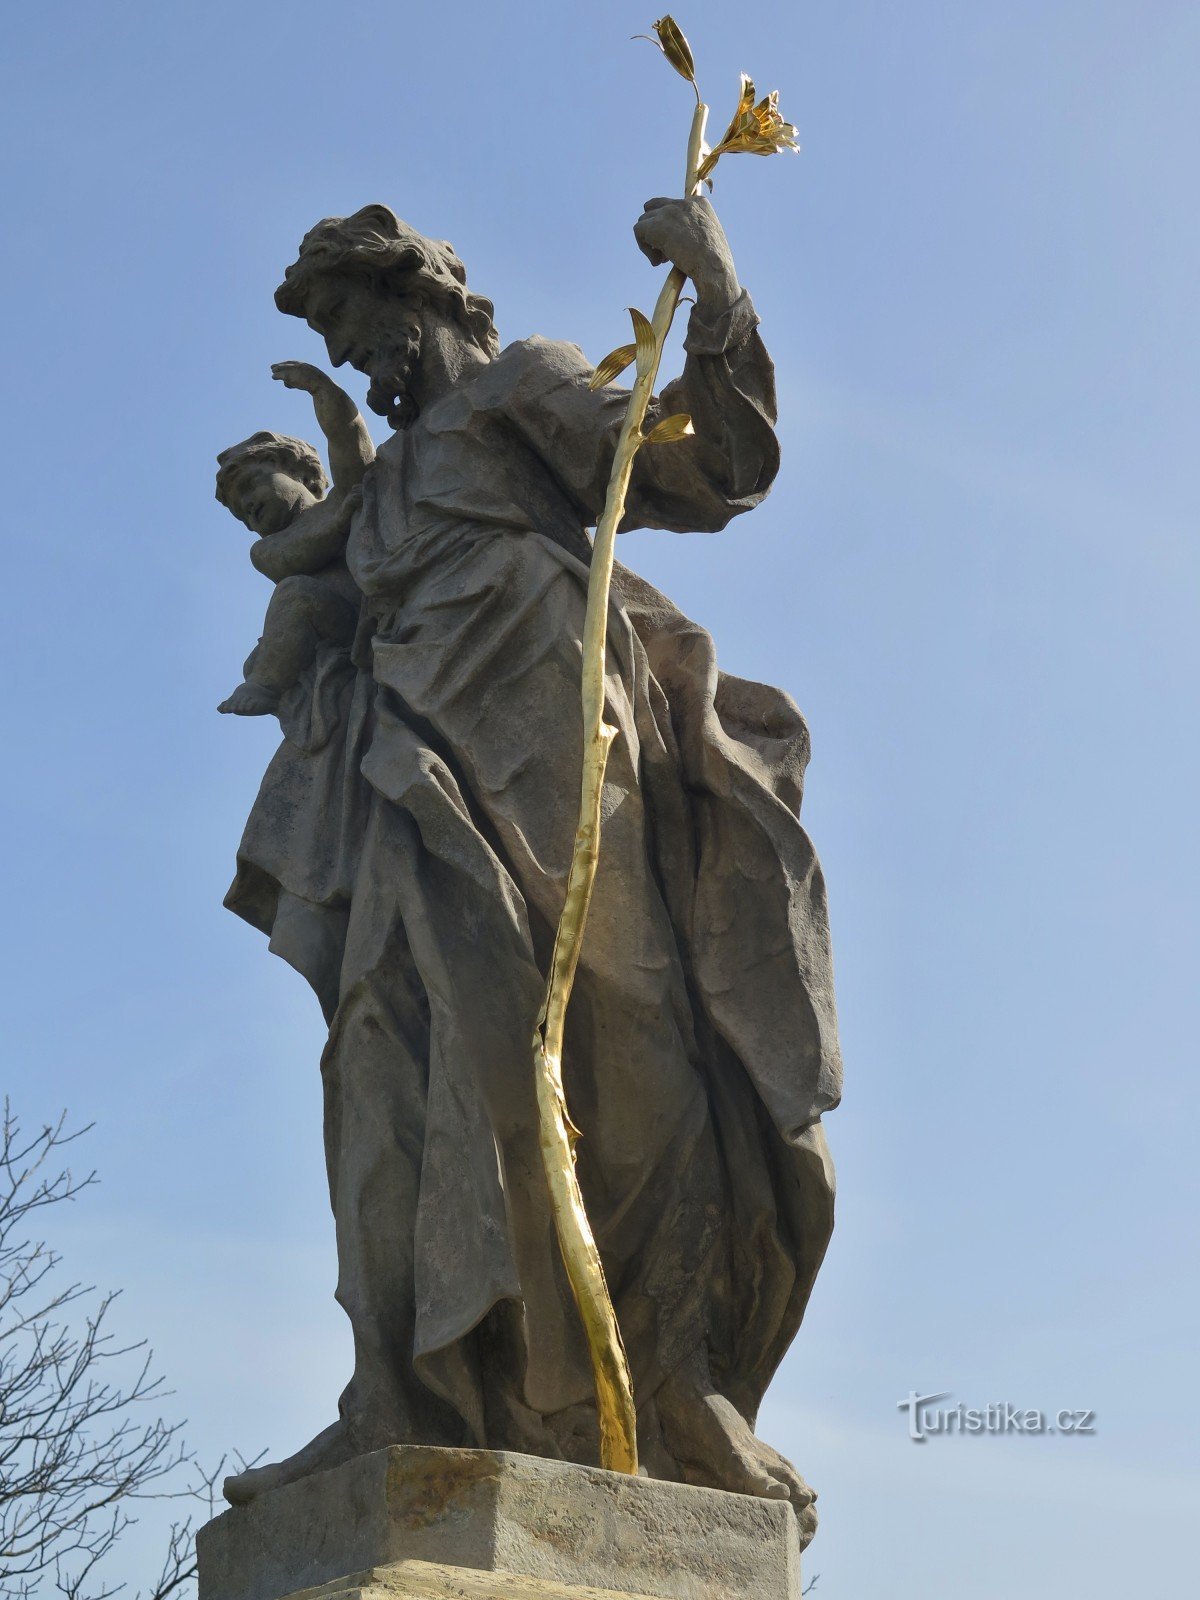 Knínice (lähellä Boskovicea) - Pyhän Tapanin patsas Joseph